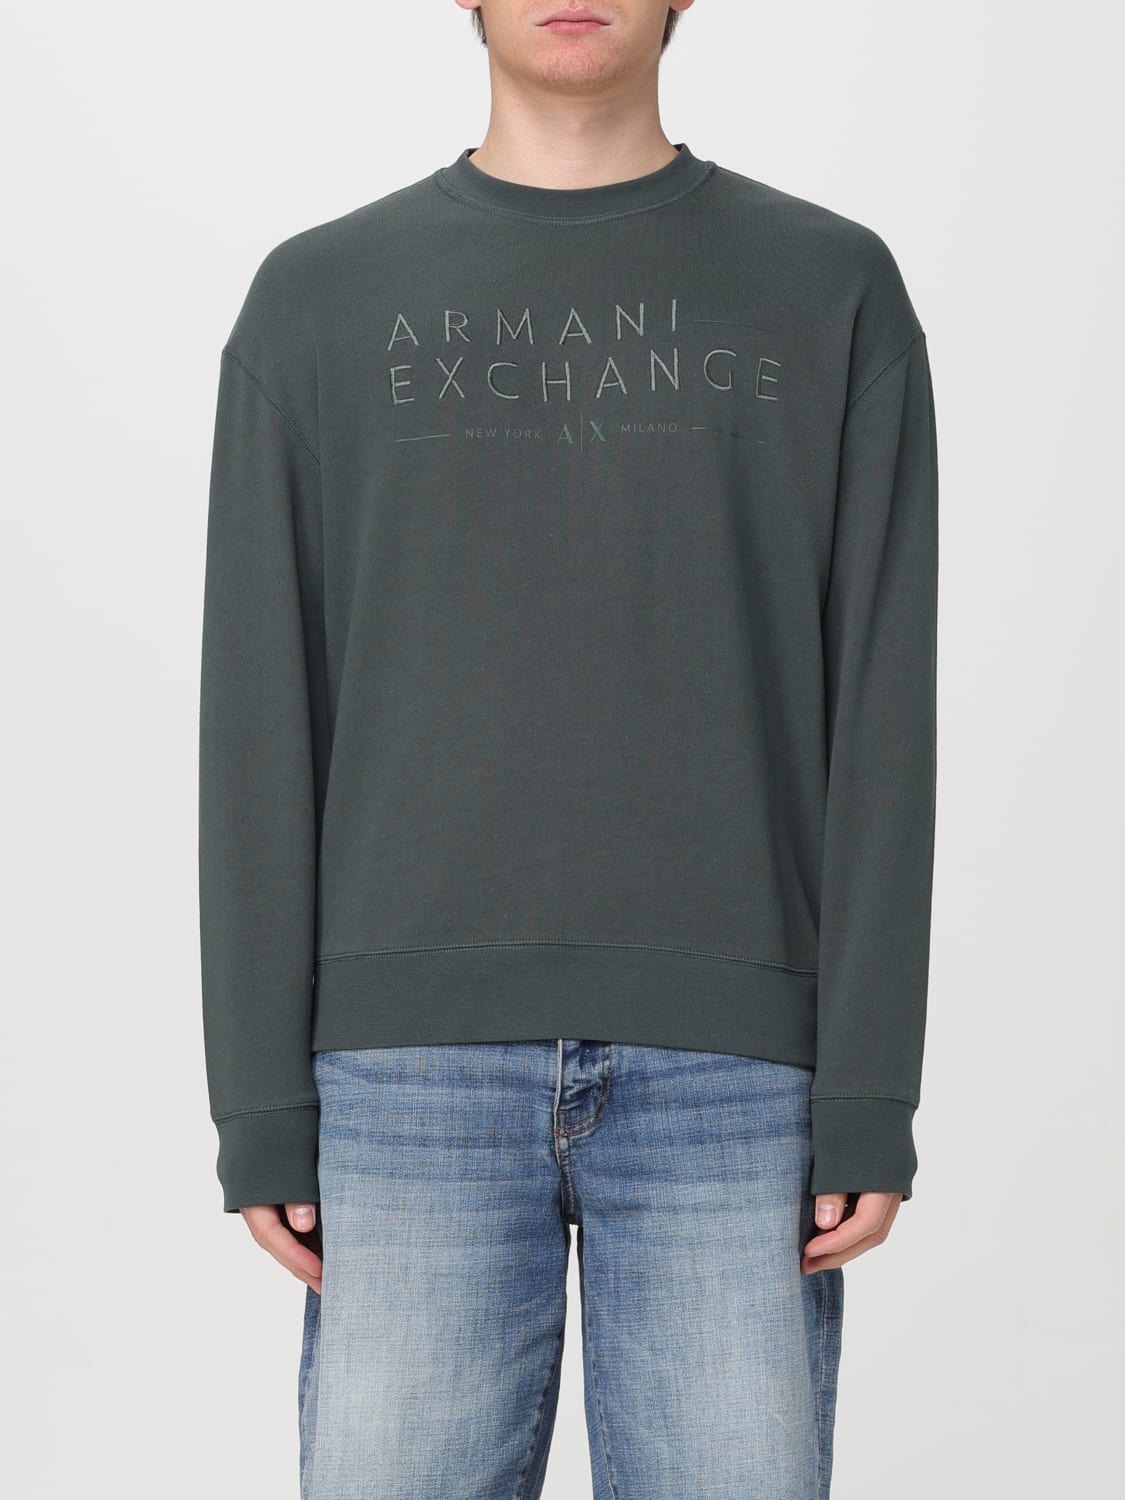 ARMANI EXCHANGE: Sweatshirt men - Green | ARMANI EXCHANGE sweatshirt ...